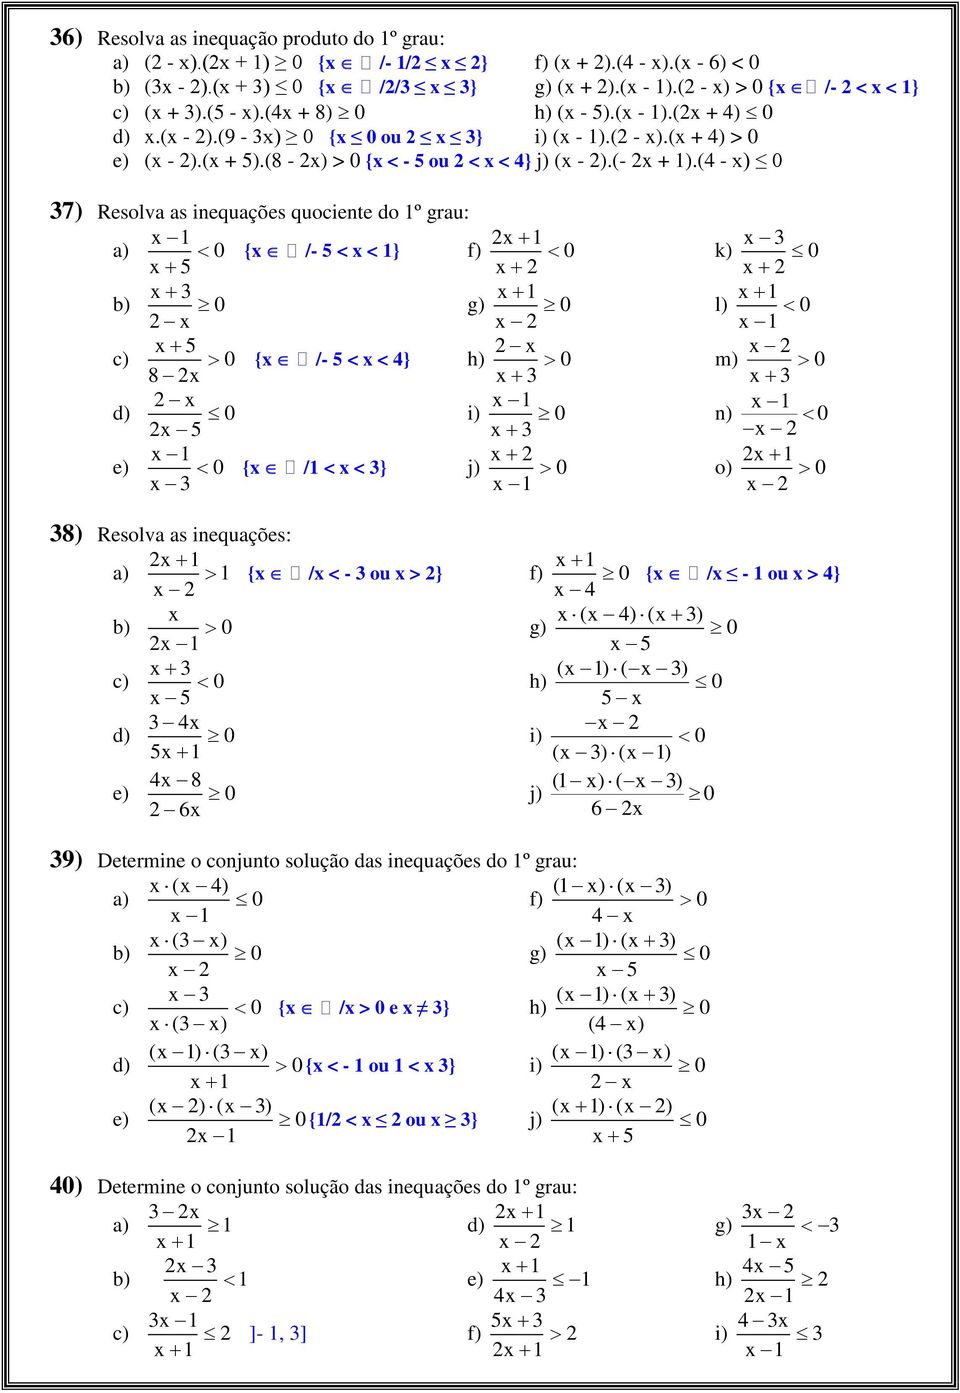 (4 - ) 0 7) Resolva as inequações quociente do 1º grau: 1 0 { /- < < 1} f) 1 0 0 g) 1 0 0 { /- < < 4} h) 0 8 0 i) 1 0 e) 1 0 { /1 < < } j) 0 1 k) 0 l) 1 0 1 m) 0 1 n) 0 o) 1 0 8) Resolva as